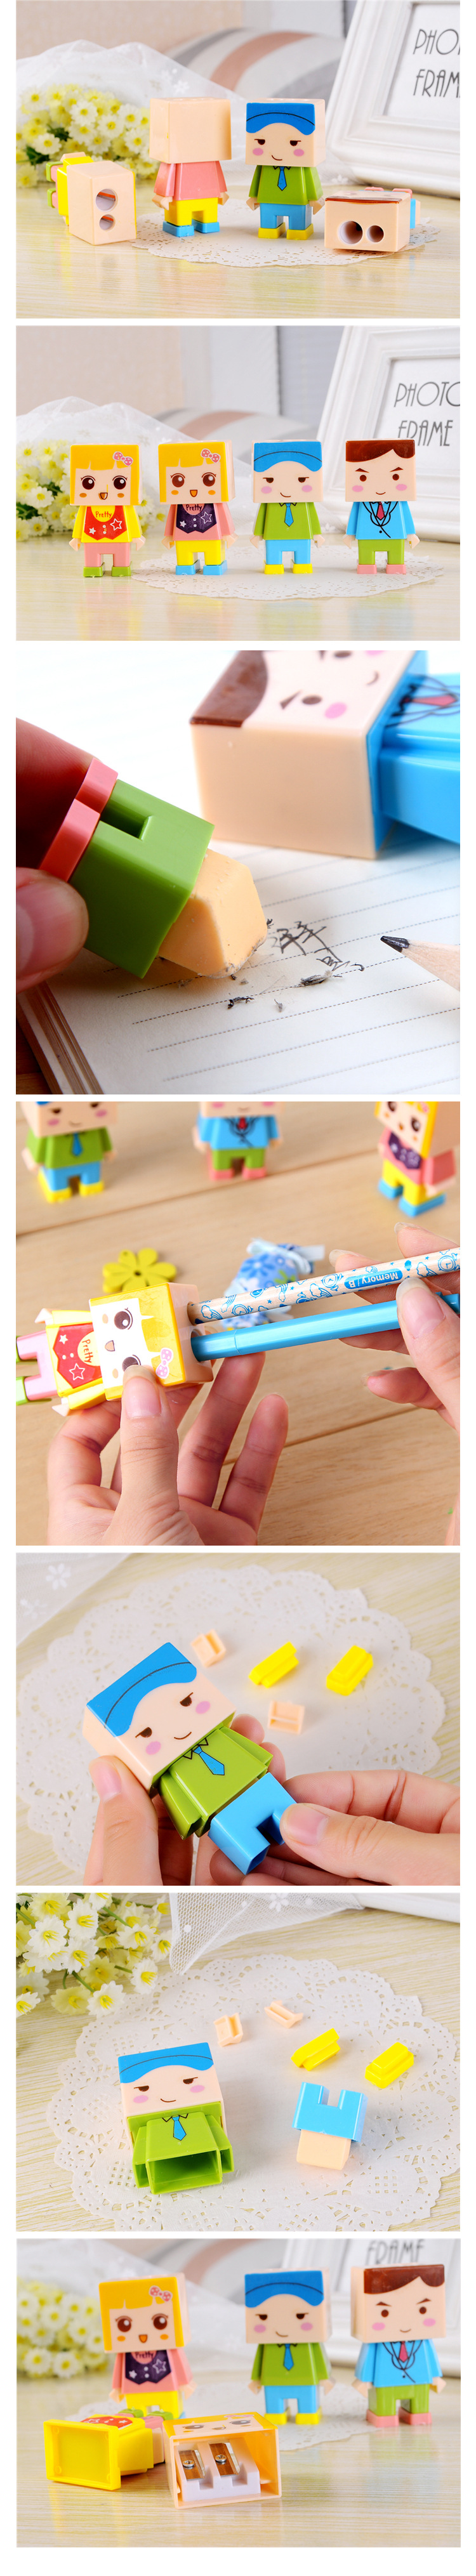 HC03卡通可愛小人兒DIY拼裝 創意卷筆刀/削筆器 雙孔帶橡皮擦